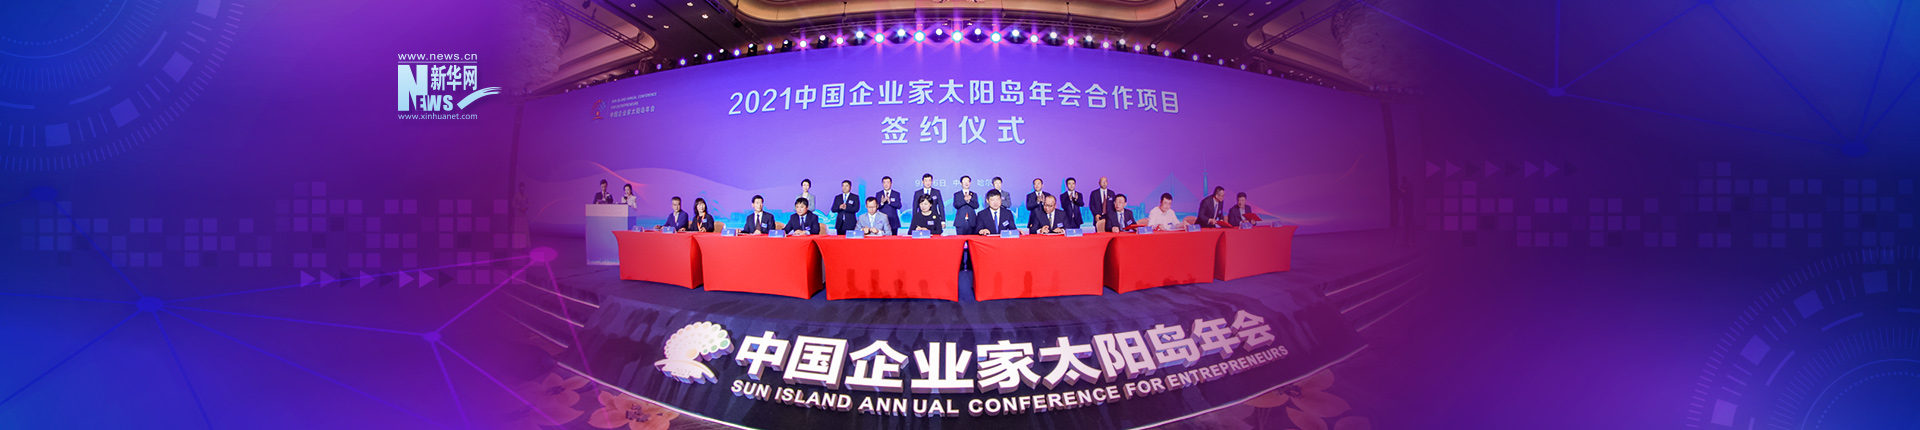 2021中国企业家太阳岛年会在哈尔滨召开